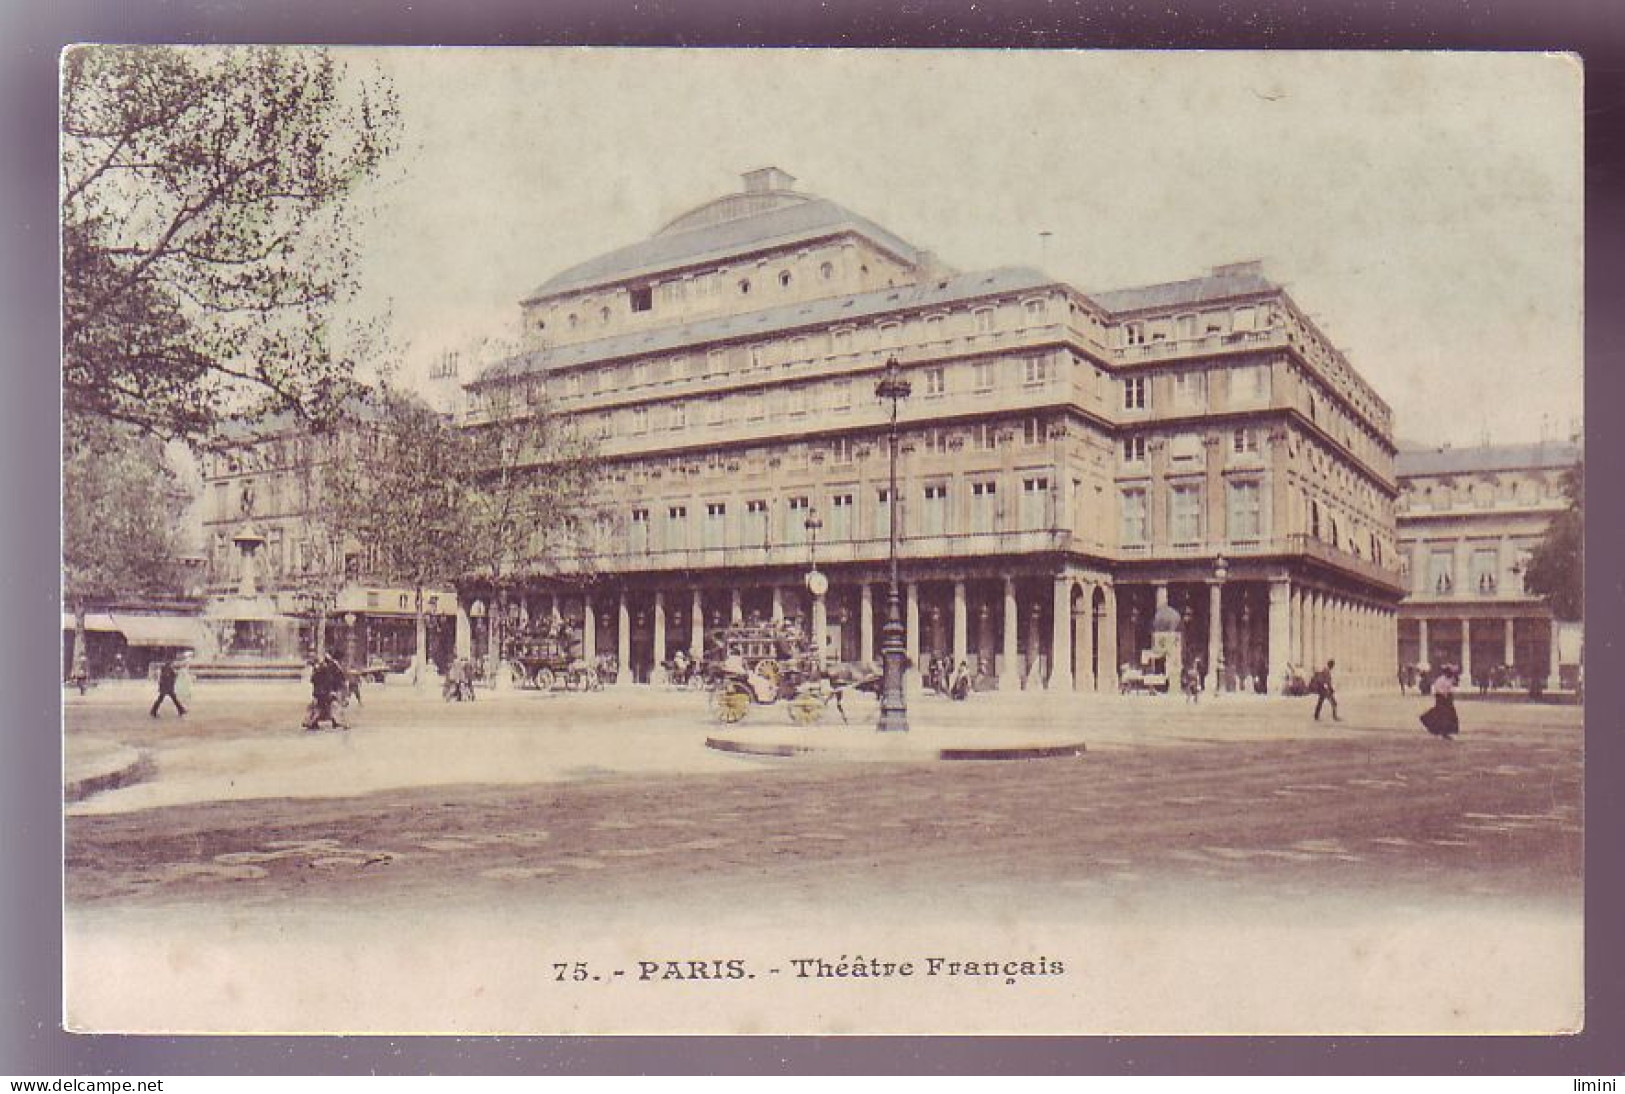 75 - PARIS - THEATRE FRANCAIS - ATTELAGE - COLORISÉE - - Autres Monuments, édifices